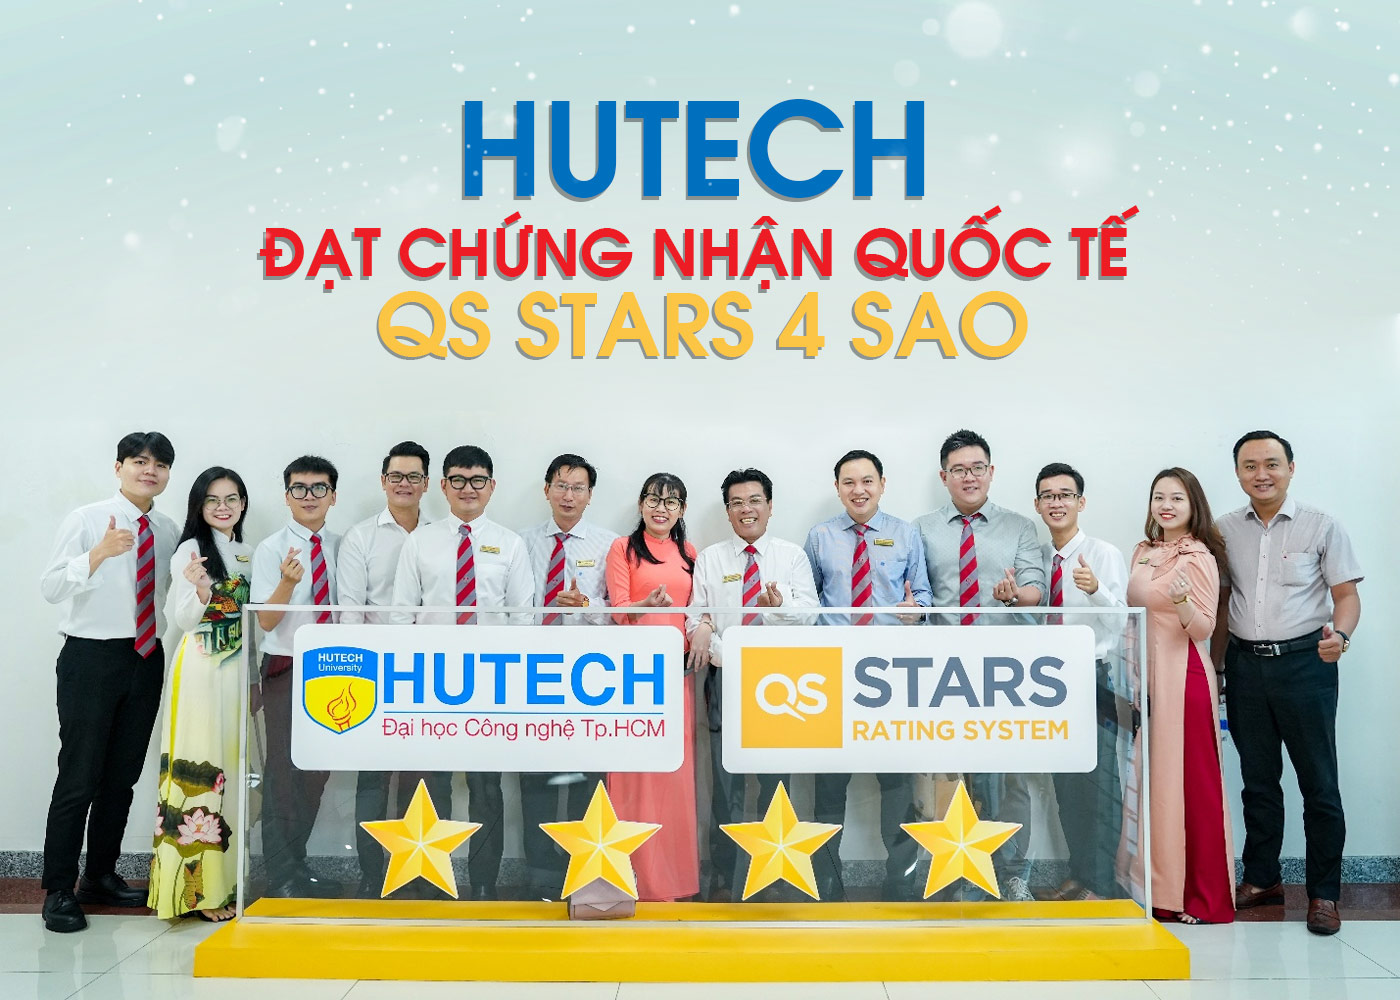 HUTECH đạt chứng nhận quốc tế QS Stars 4 Sao - Ảnh 1